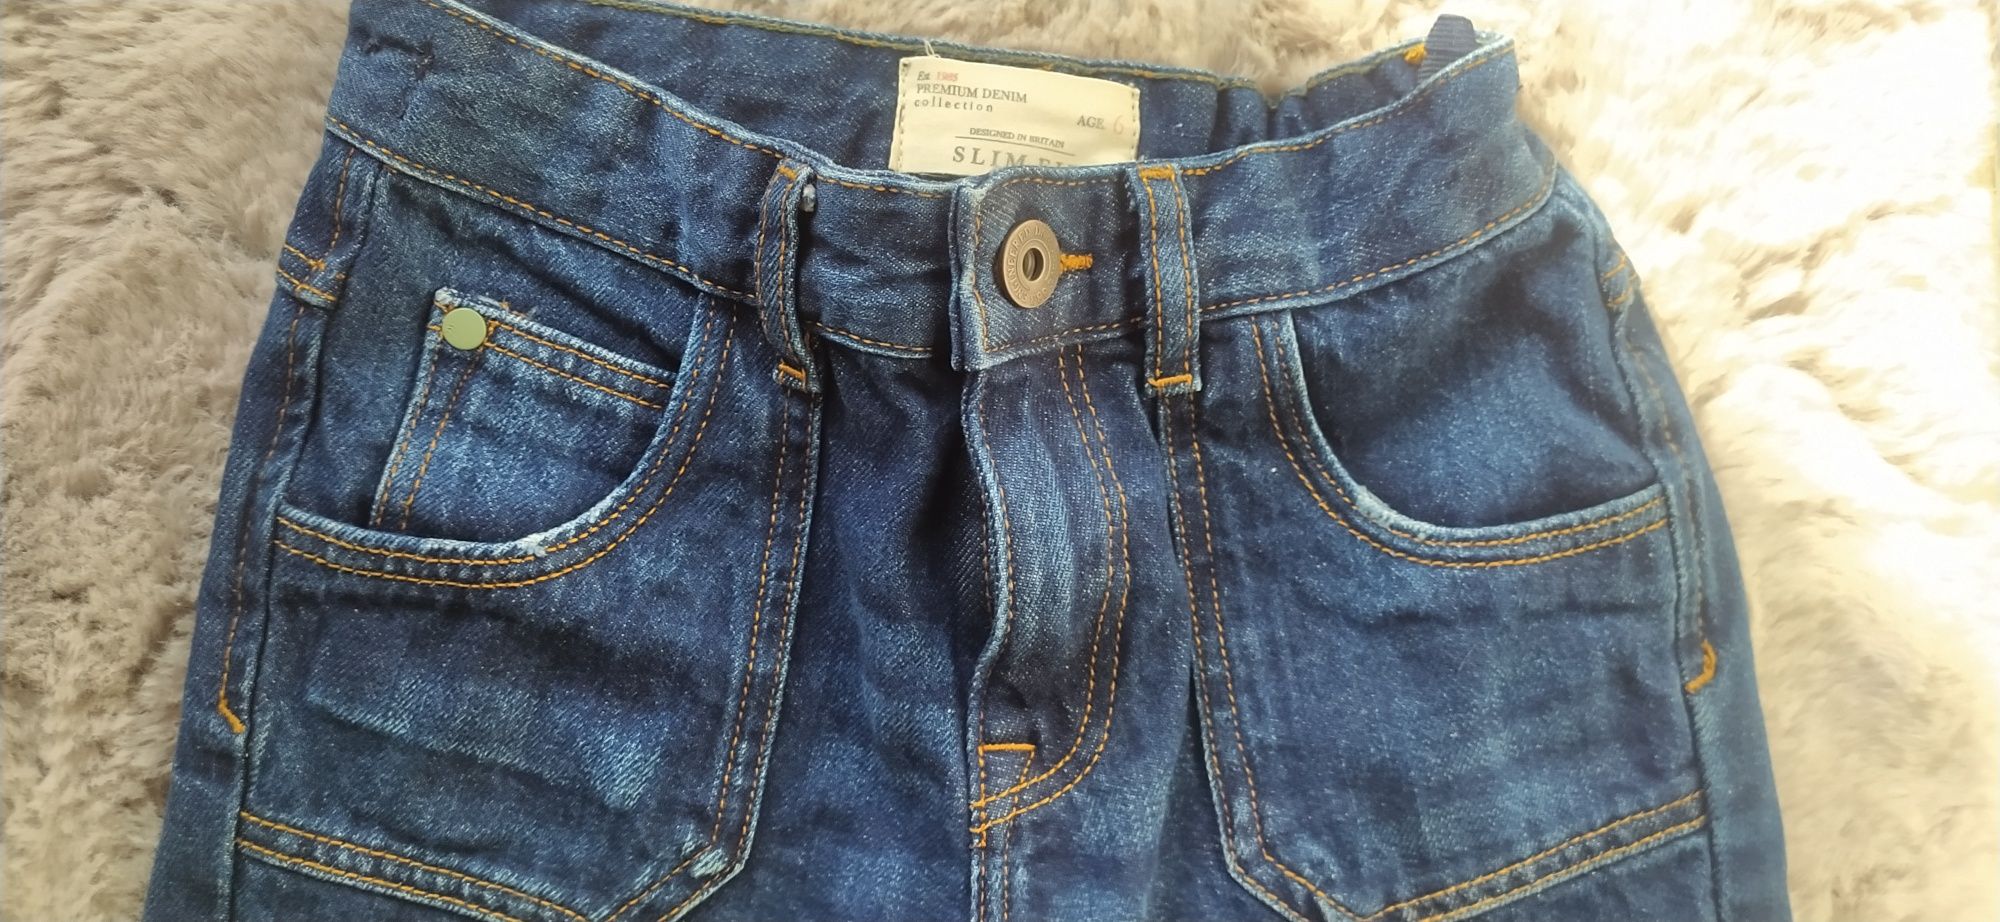 Denominację spodnie jeansy chłopiec 6 lat